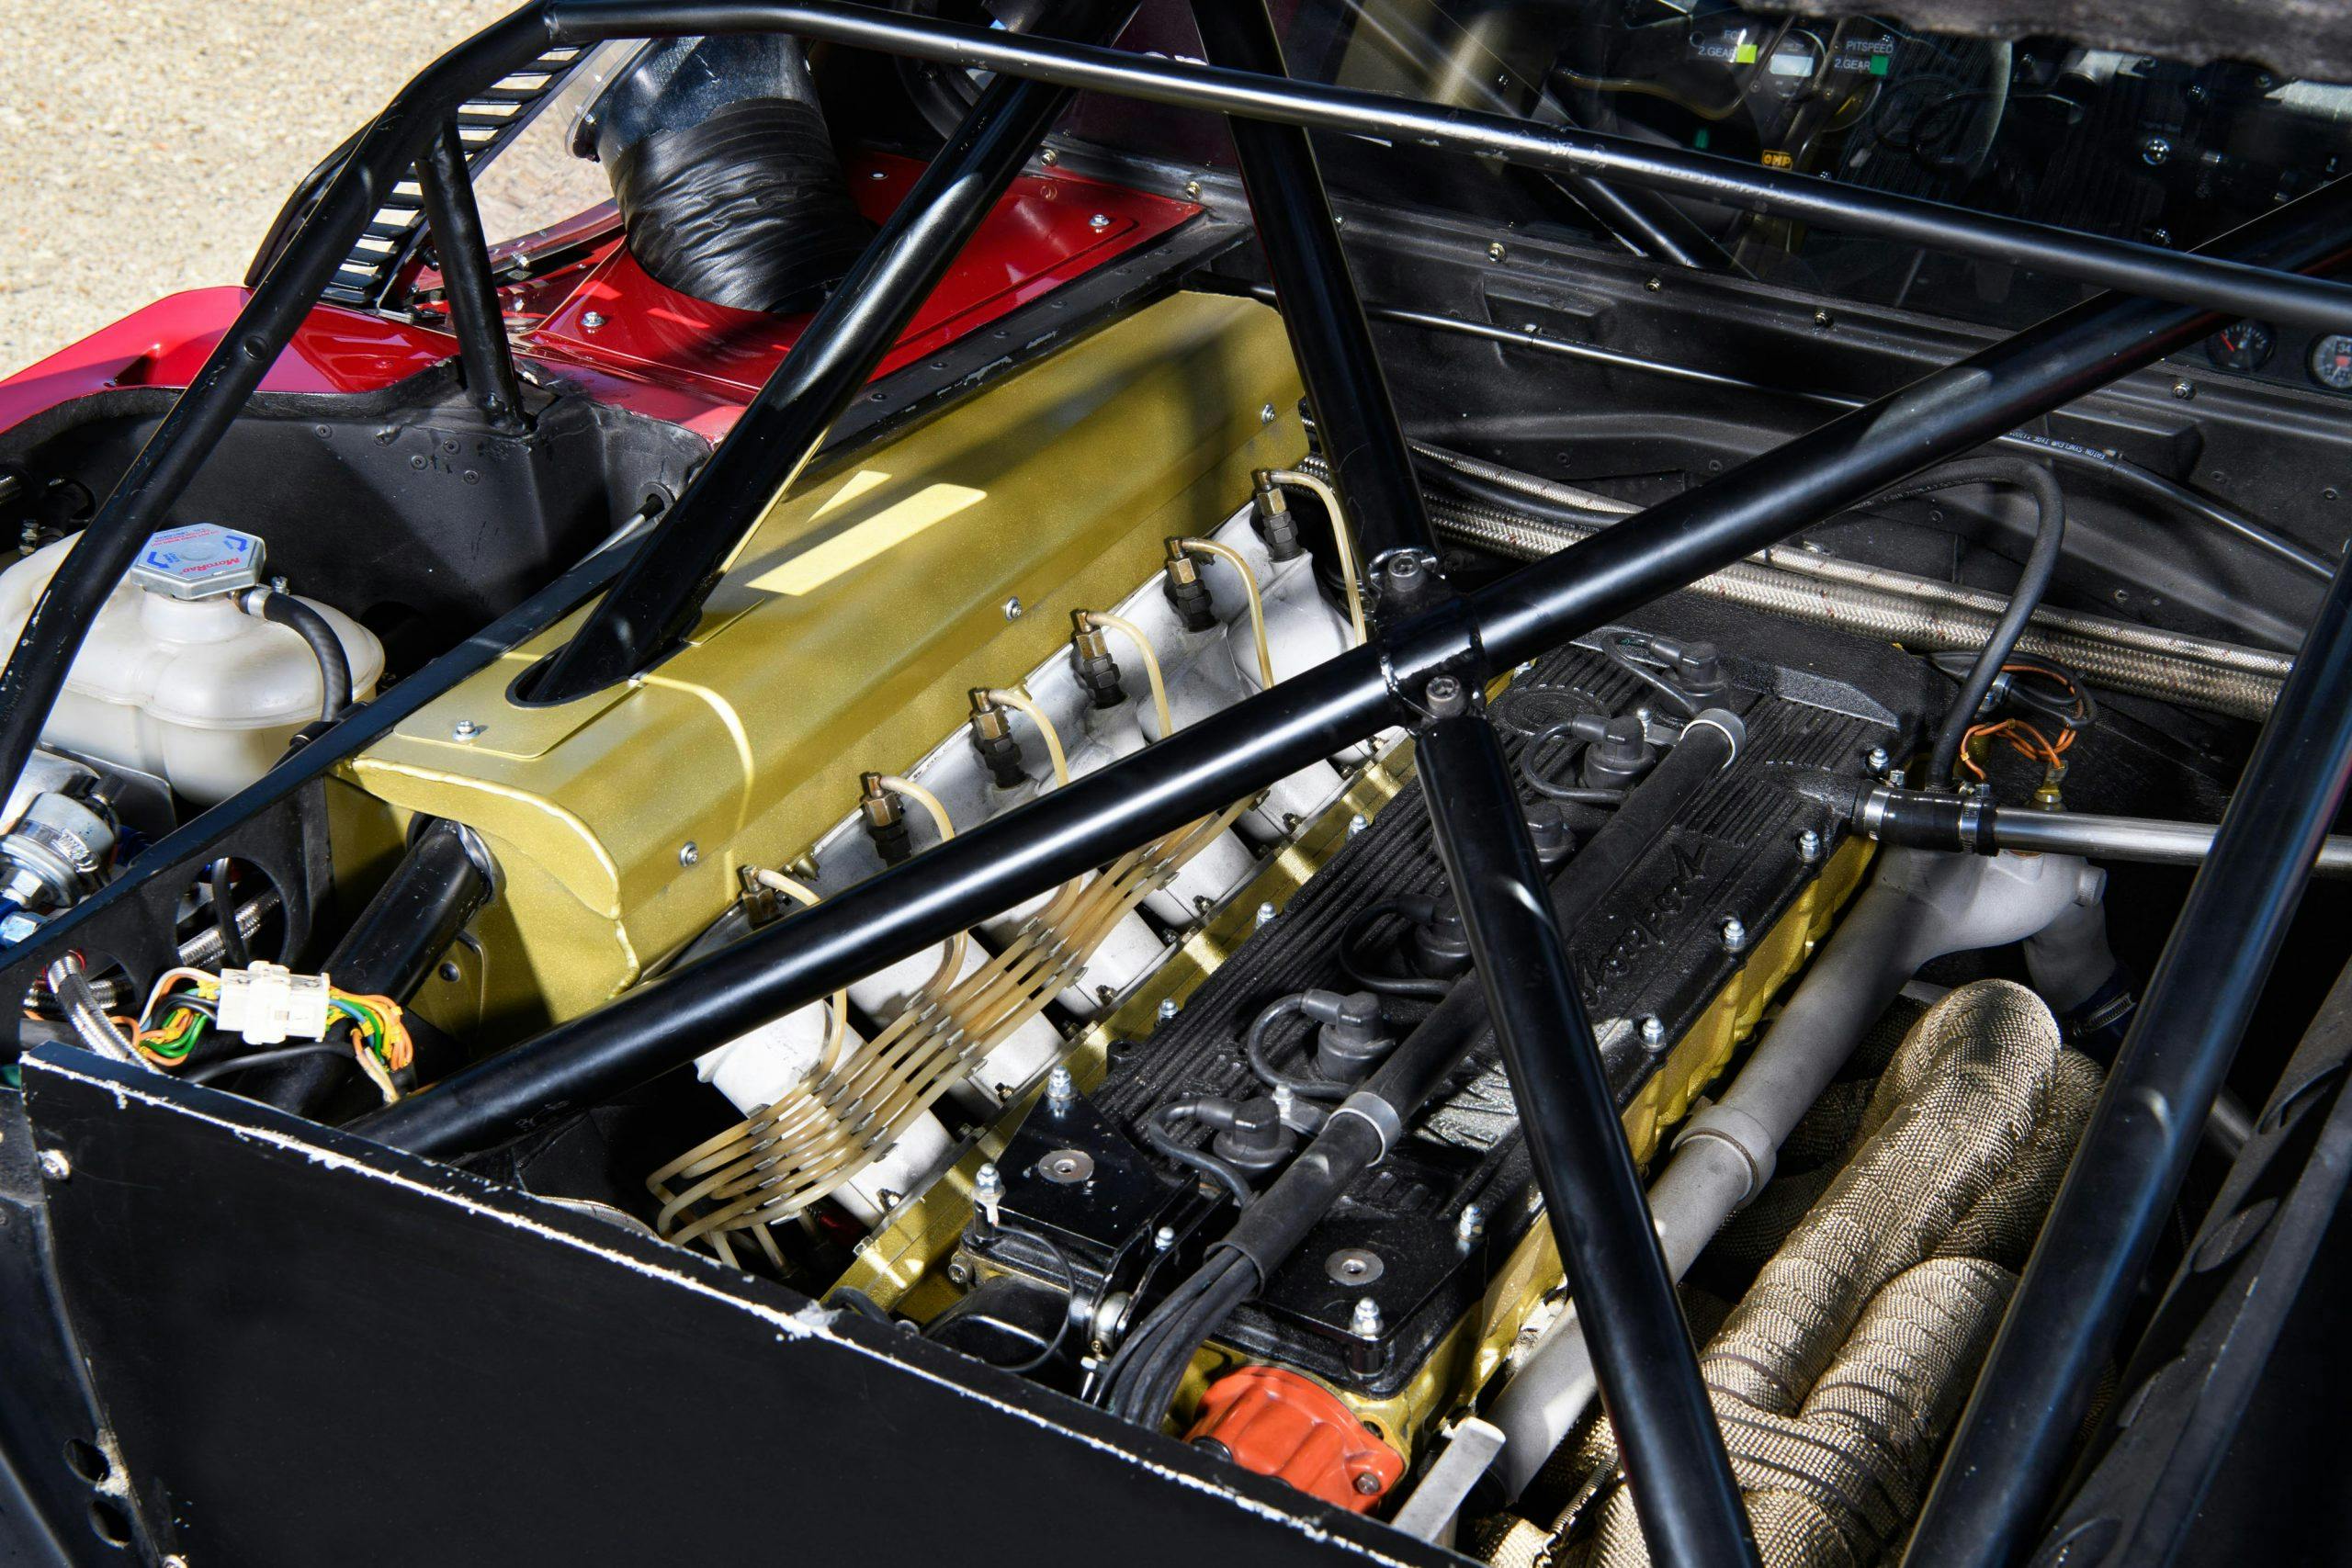 BMW M1 Procar engine